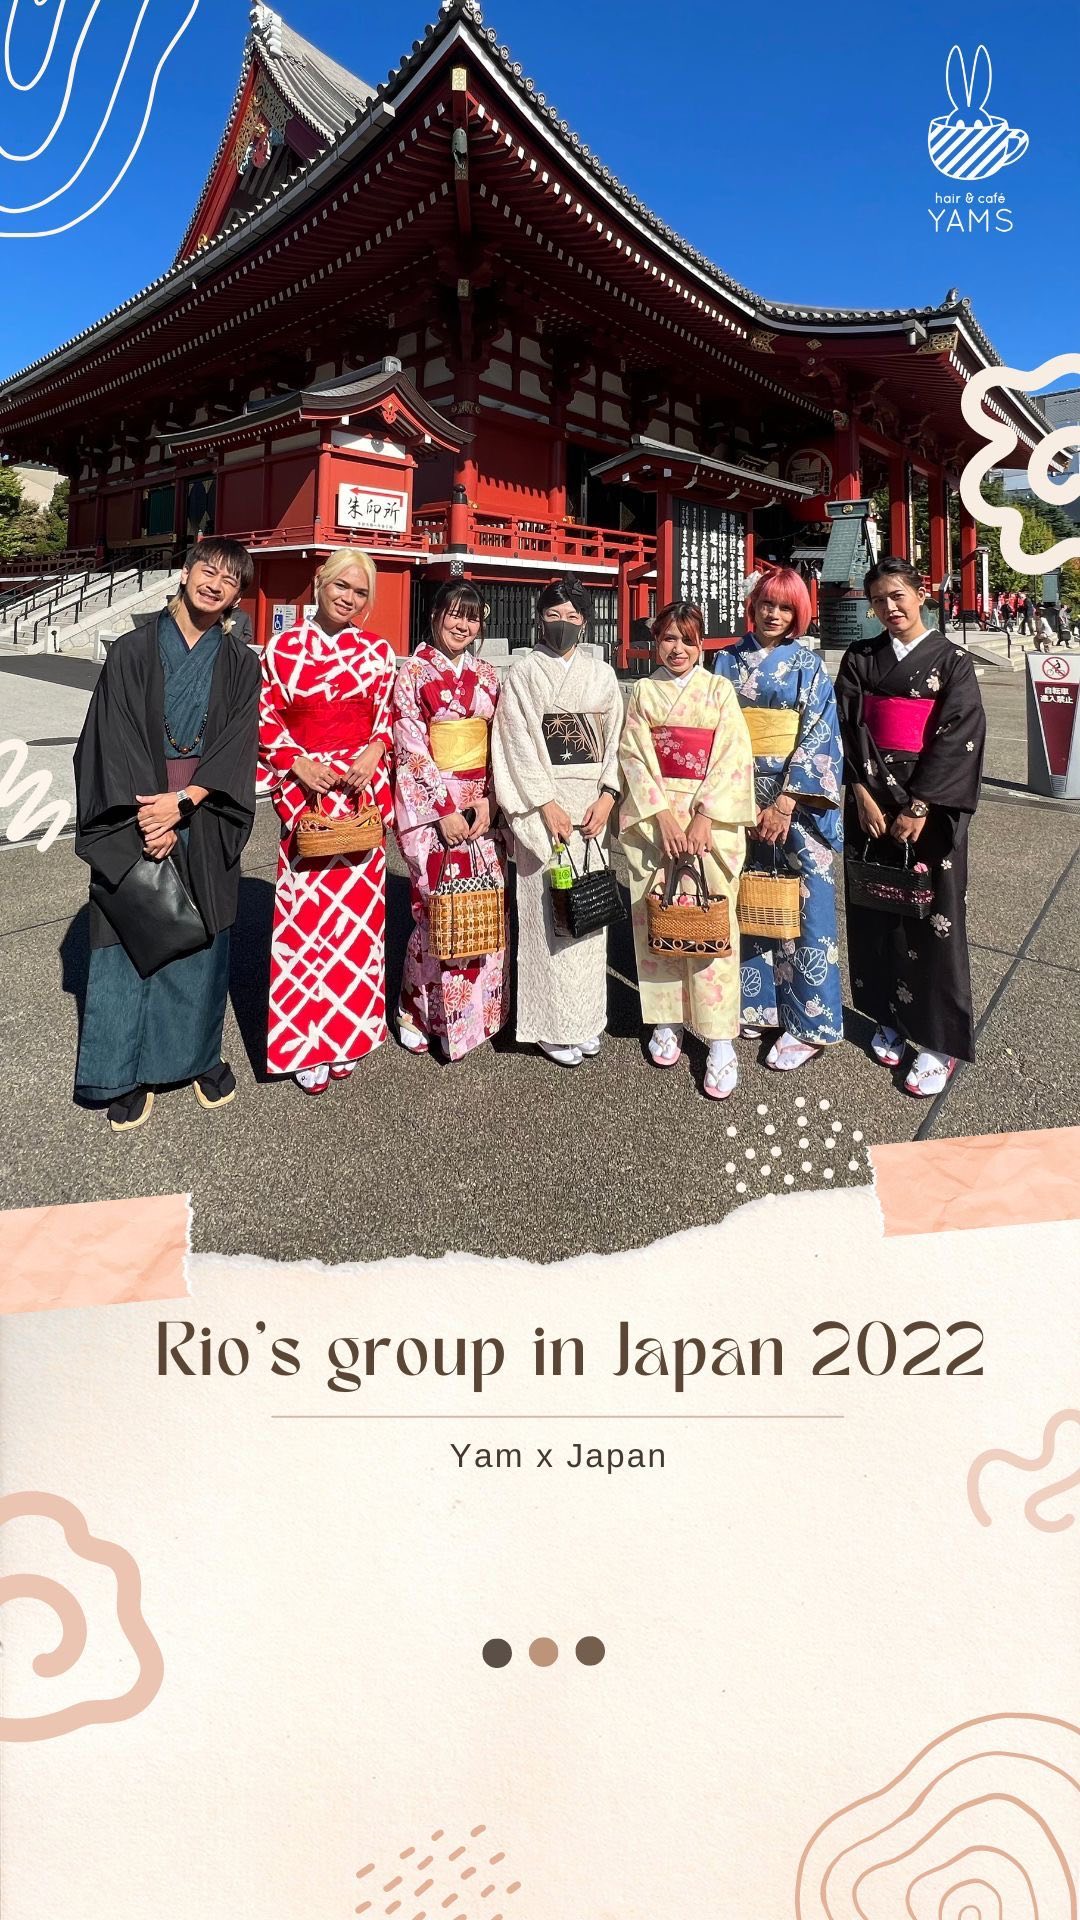 วันนี้จะพามาดูงาน Rio’s Group work shop in Japan 2022นอกจากจะได้เทคนิคใหม่ๆ และเรียนรู้ถึงมาตรฐานการบริการแบบญี่ปุ่นกลับมาแล้ว ยังได้ฟินกับบรรยากาศดีๆ ของประเทศญี่ปุ่นอีกด้วยค่ะ  YAMS hair&cafe  For booking/ご予約、お問い合わせ↓
LINE ID:@qai5573z
Tel:02-163-4973